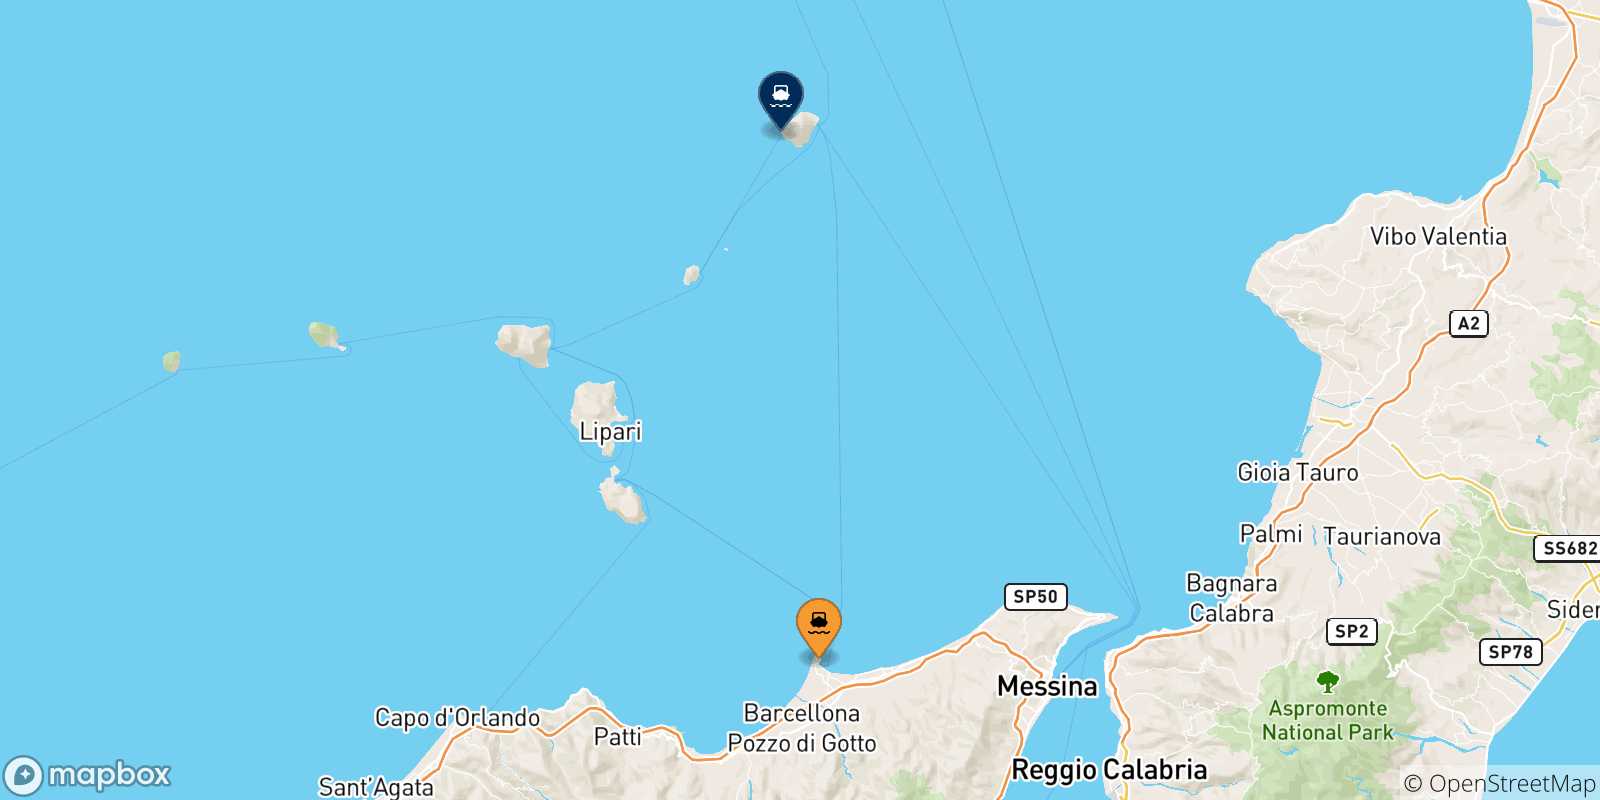 Mappa delle possibili rotte tra la Sicilia e Ginostra (Stromboli)